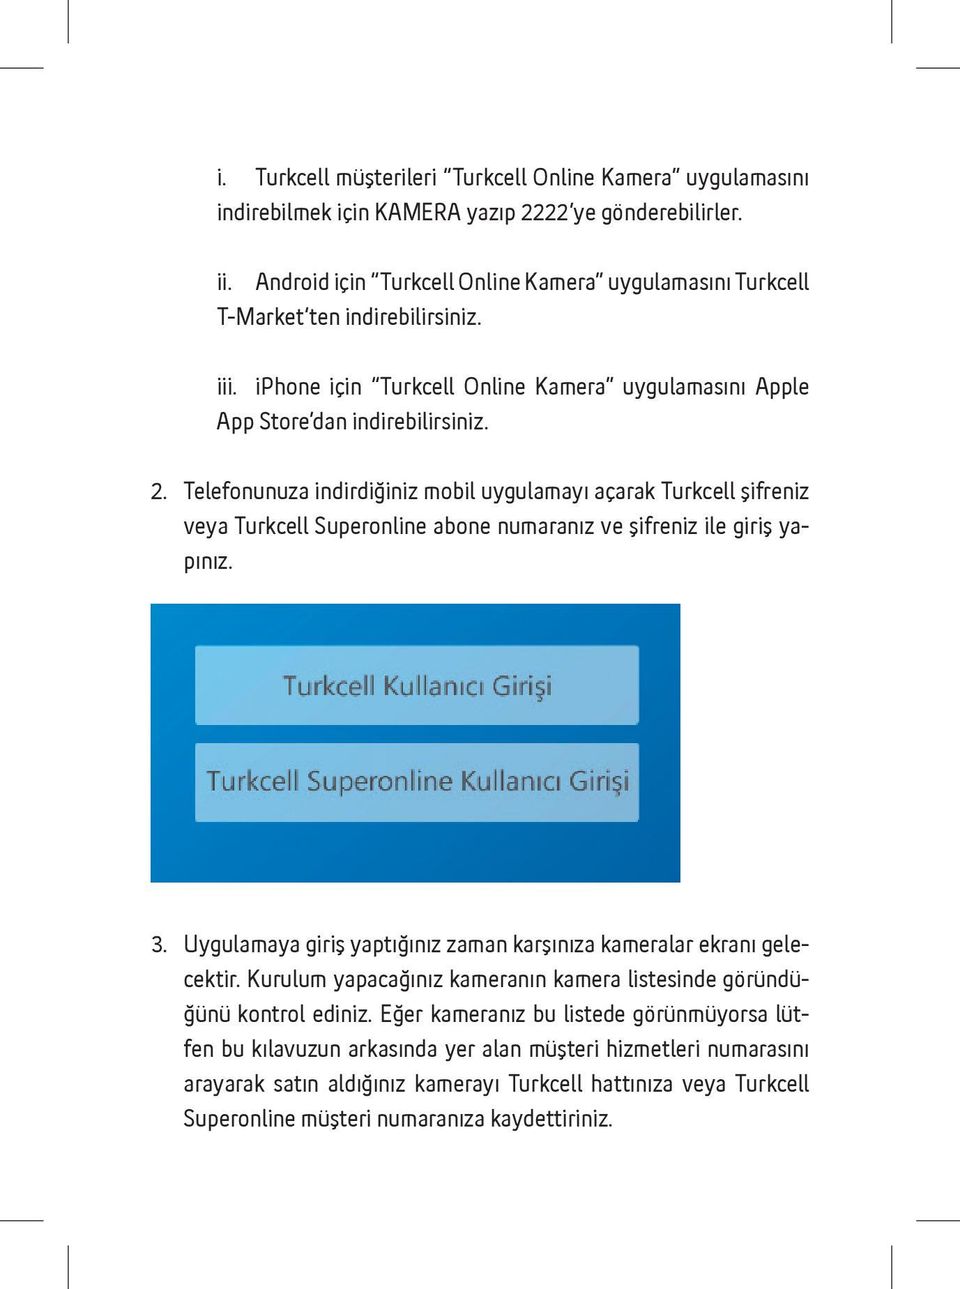 Telefonunuza indirdiğiniz mobil uygulamayı açarak Turkcell şifreniz veya Turkcell Superonline abone numaranız ve şifreniz ile giriş yapınız. 3.